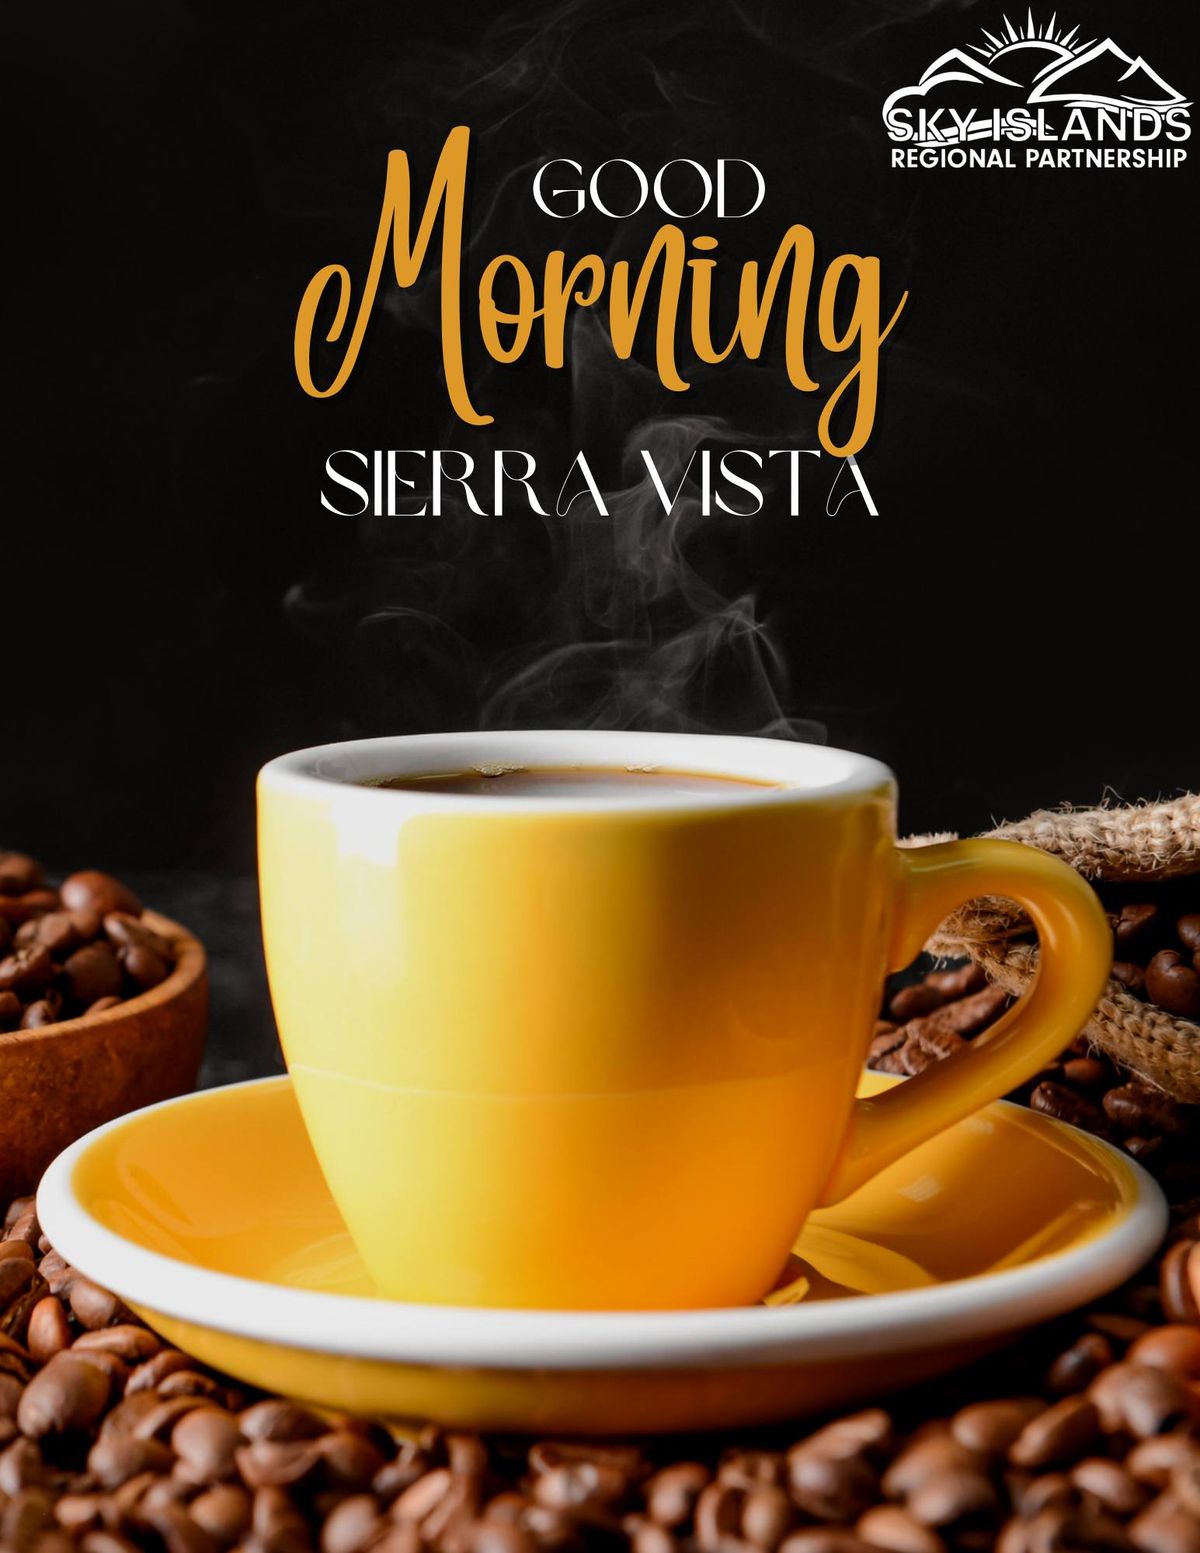 Good Morning Sierra Vista